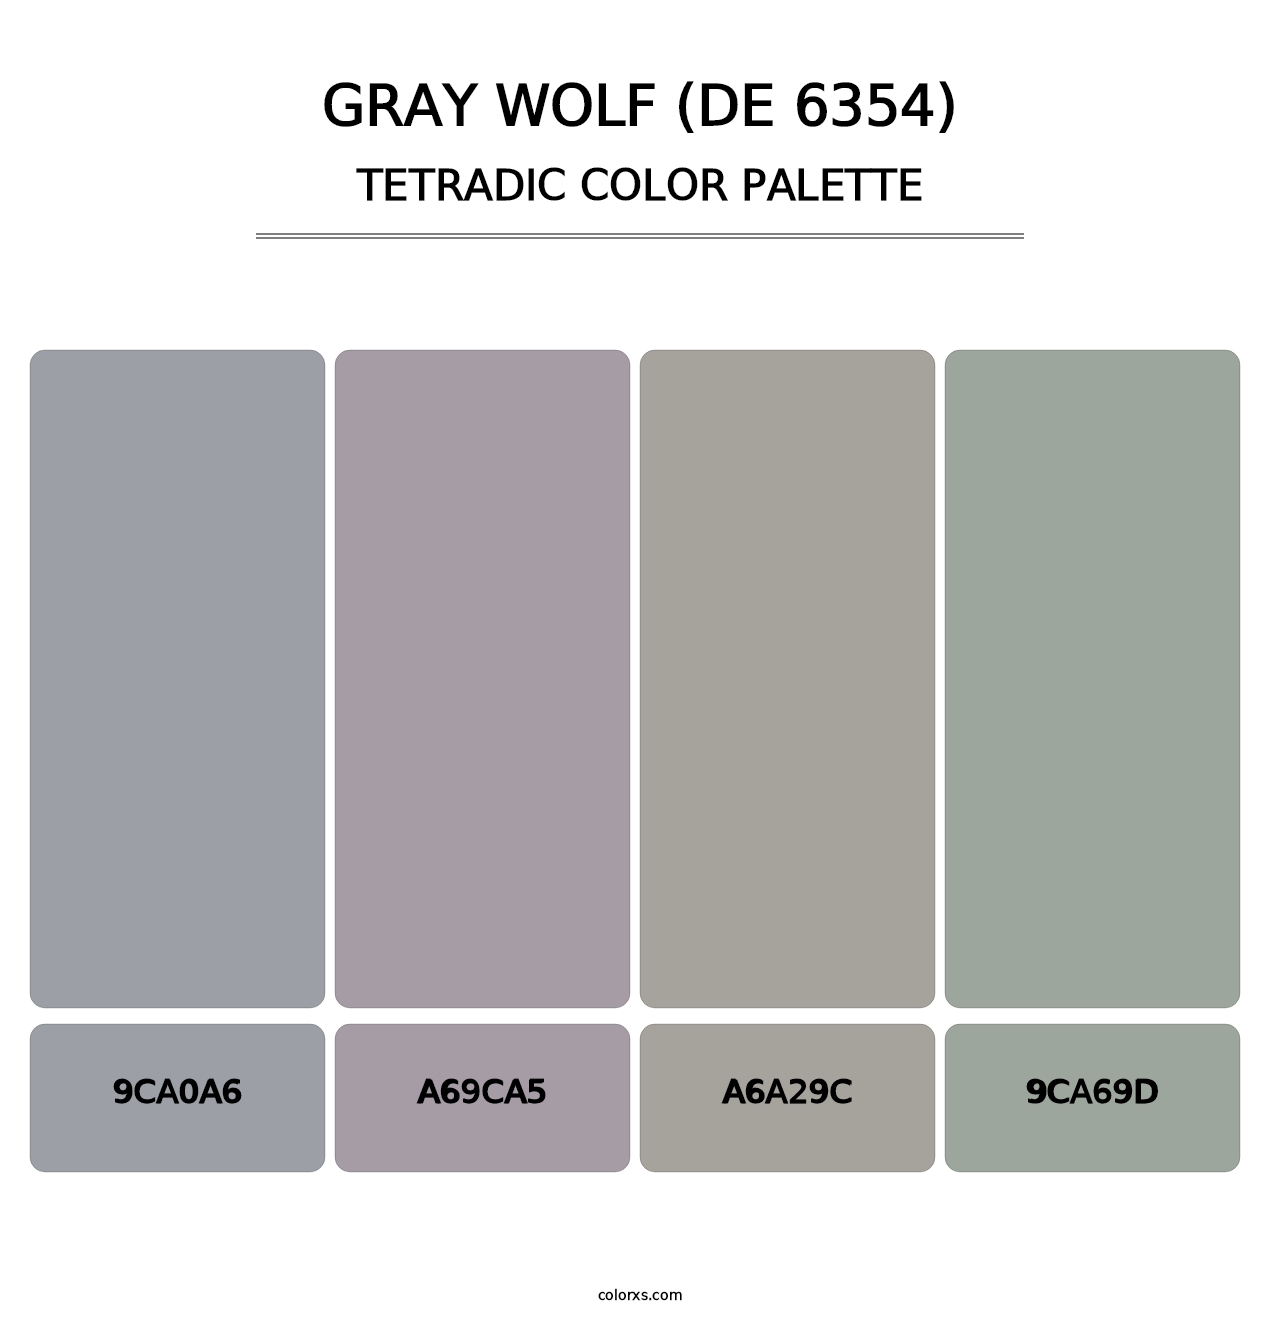 Gray Wolf (DE 6354) - Tetradic Color Palette